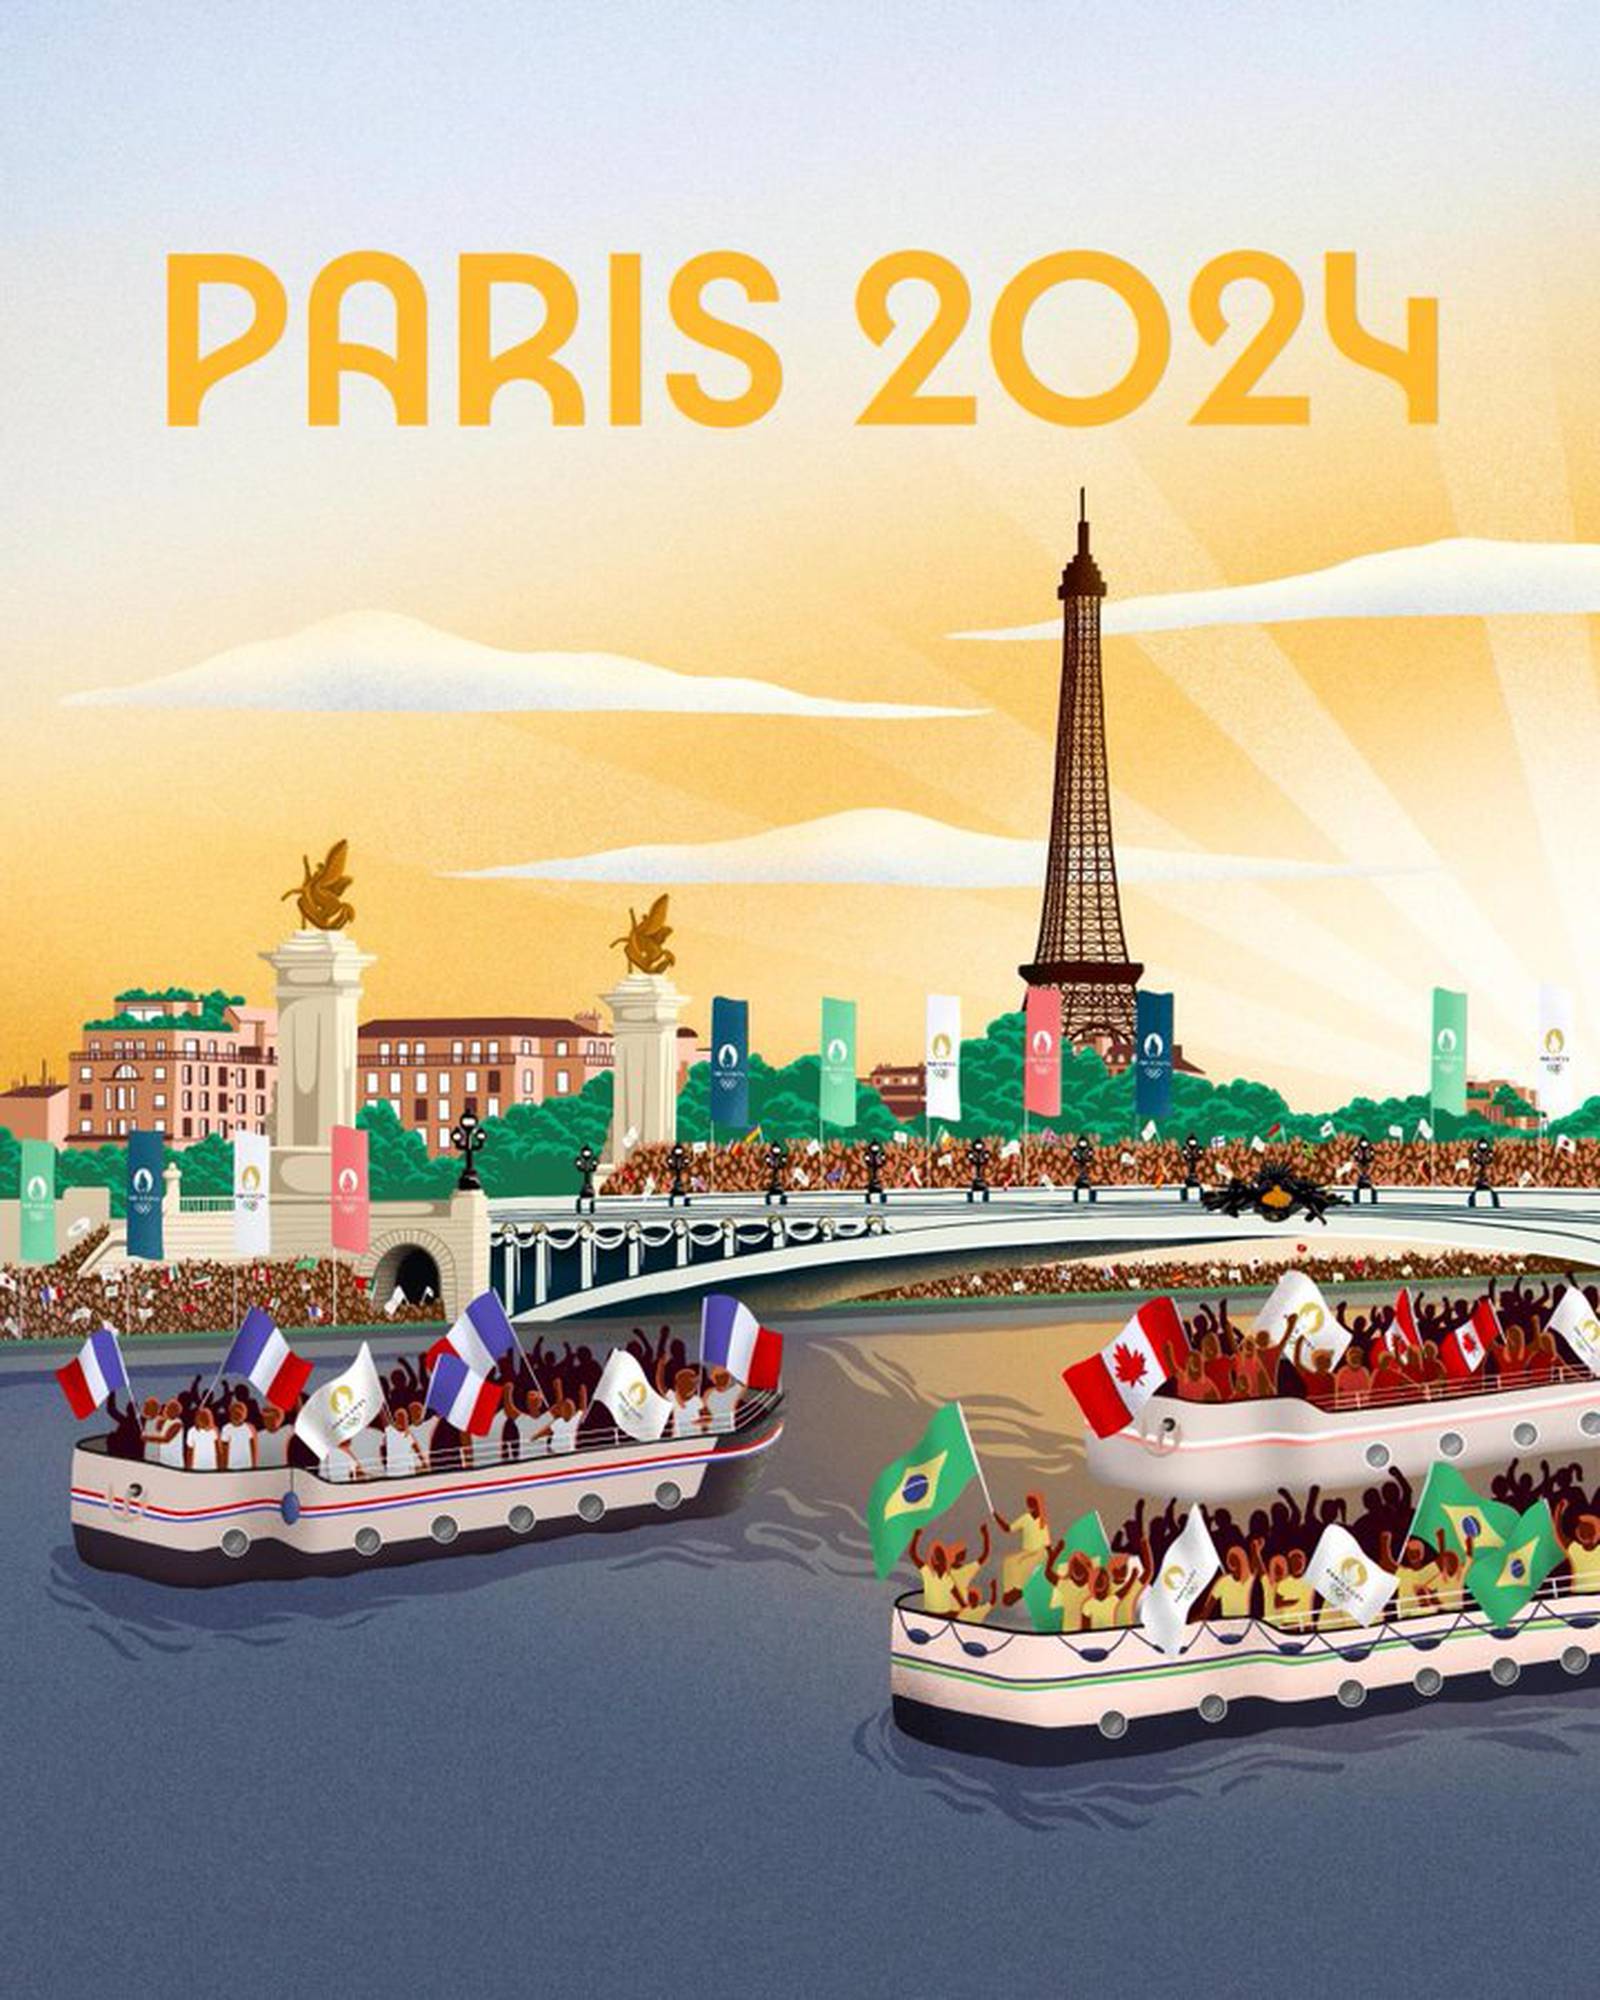 Juegos Olímpicos París 2024 a dos años de su inauguración 26 de julio